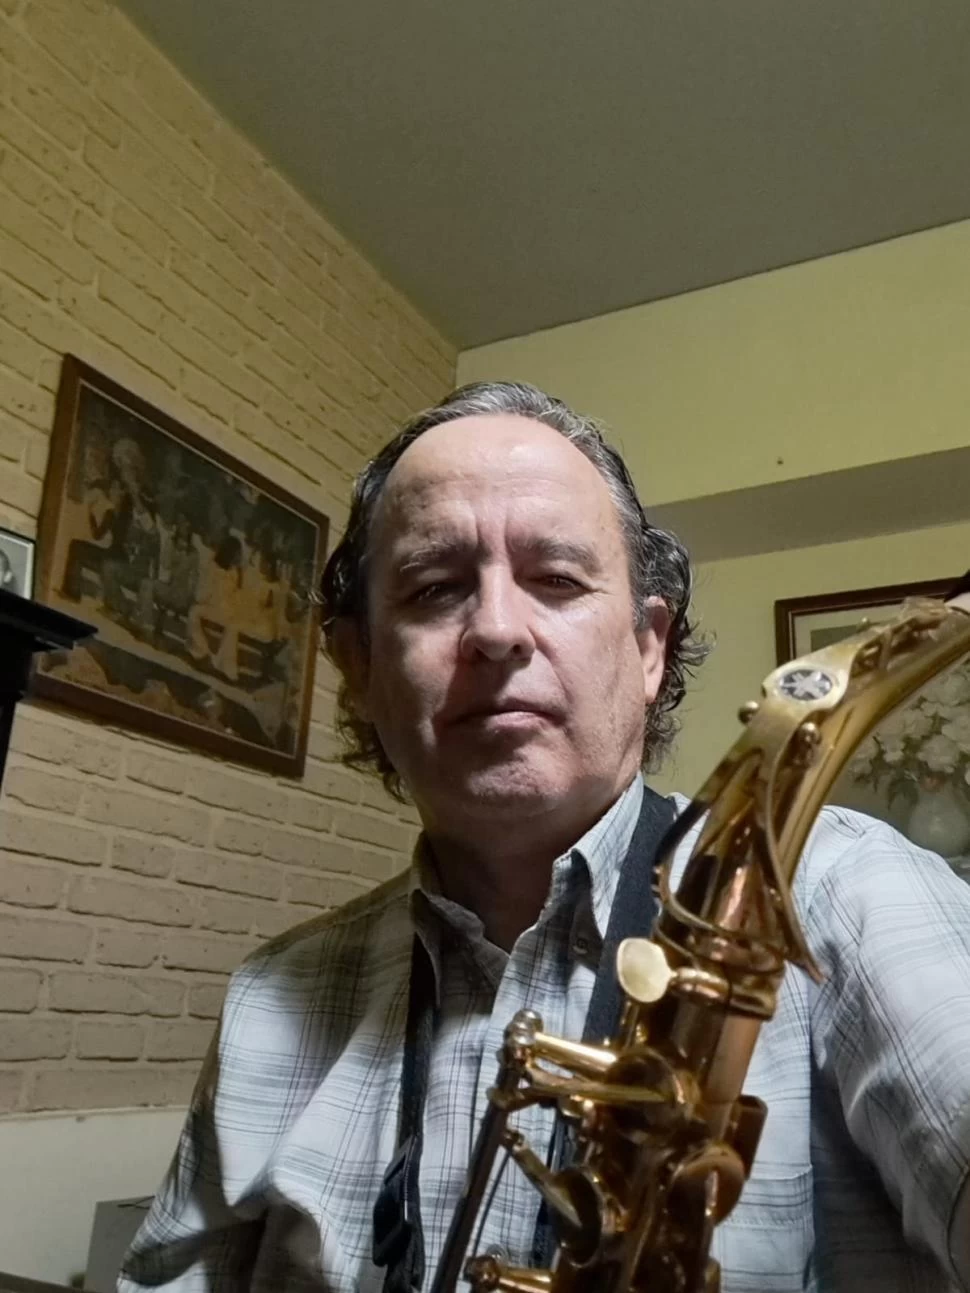 APASIONADO. José Casen interpretará el saxo esta noche en Papaya, con González Goytía, Terol y Podazza. asdf asdf